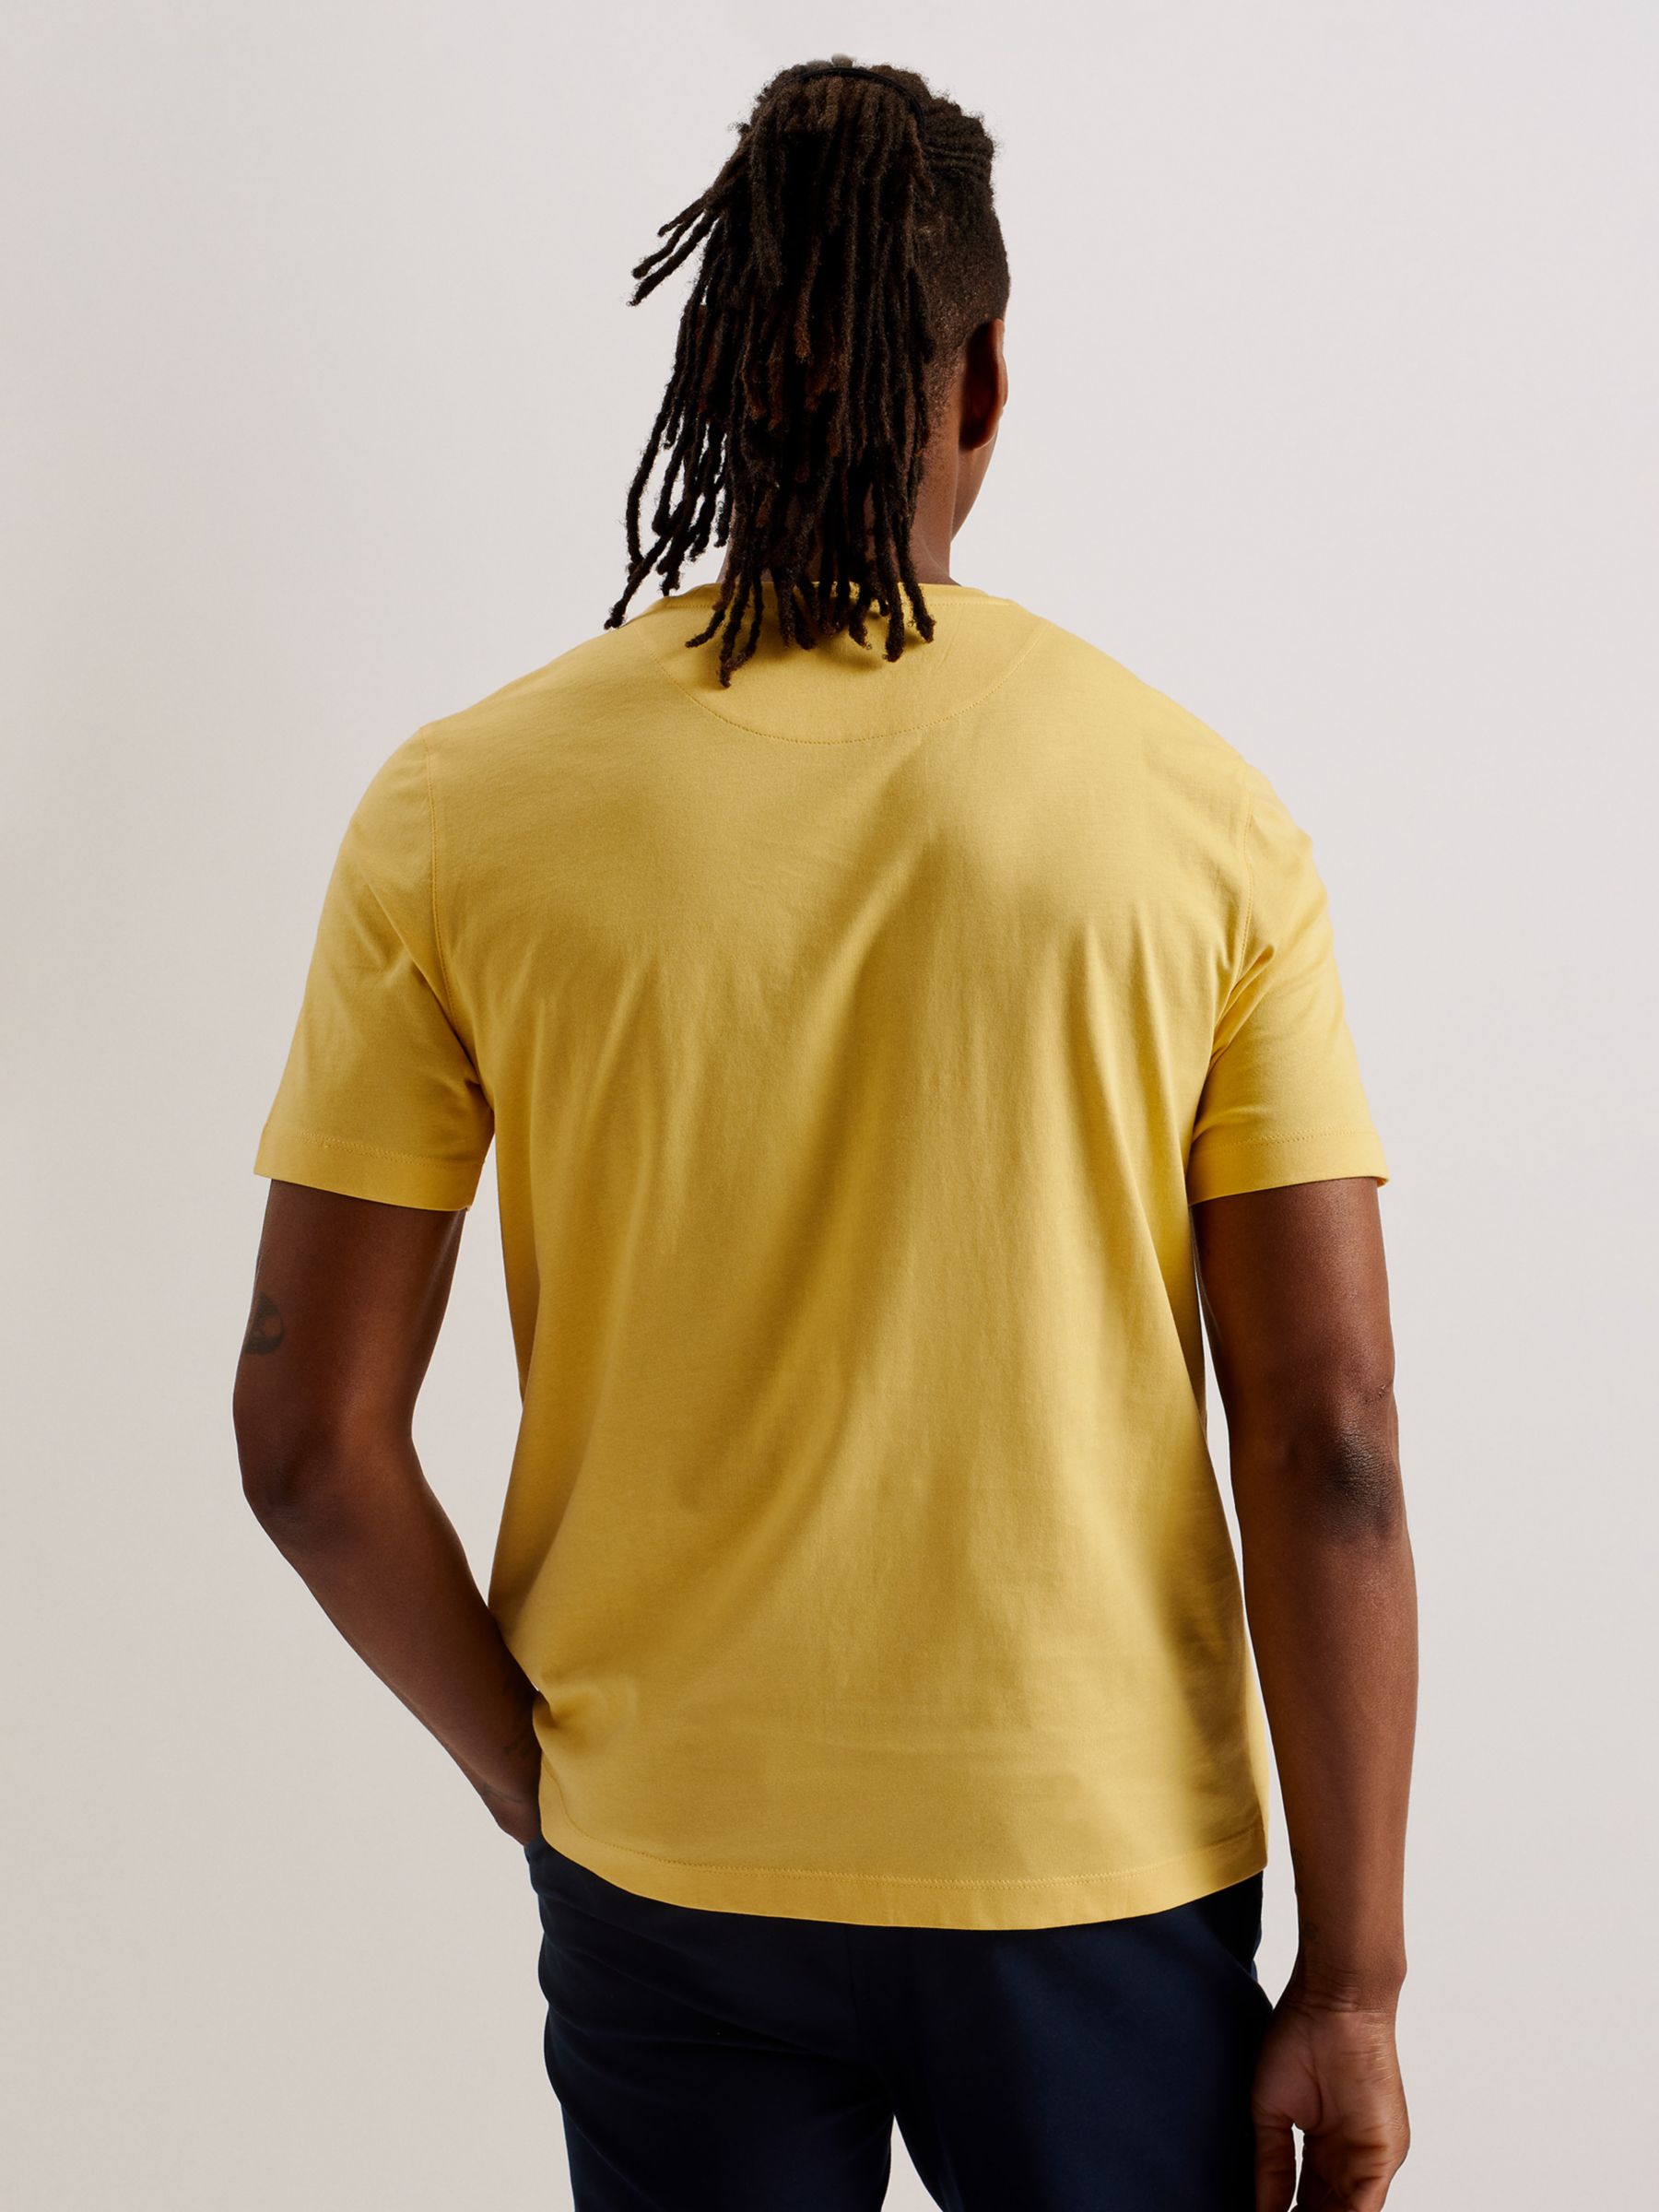 Ted Baker Tywinn Cotton T-Shirt, Yellow, S